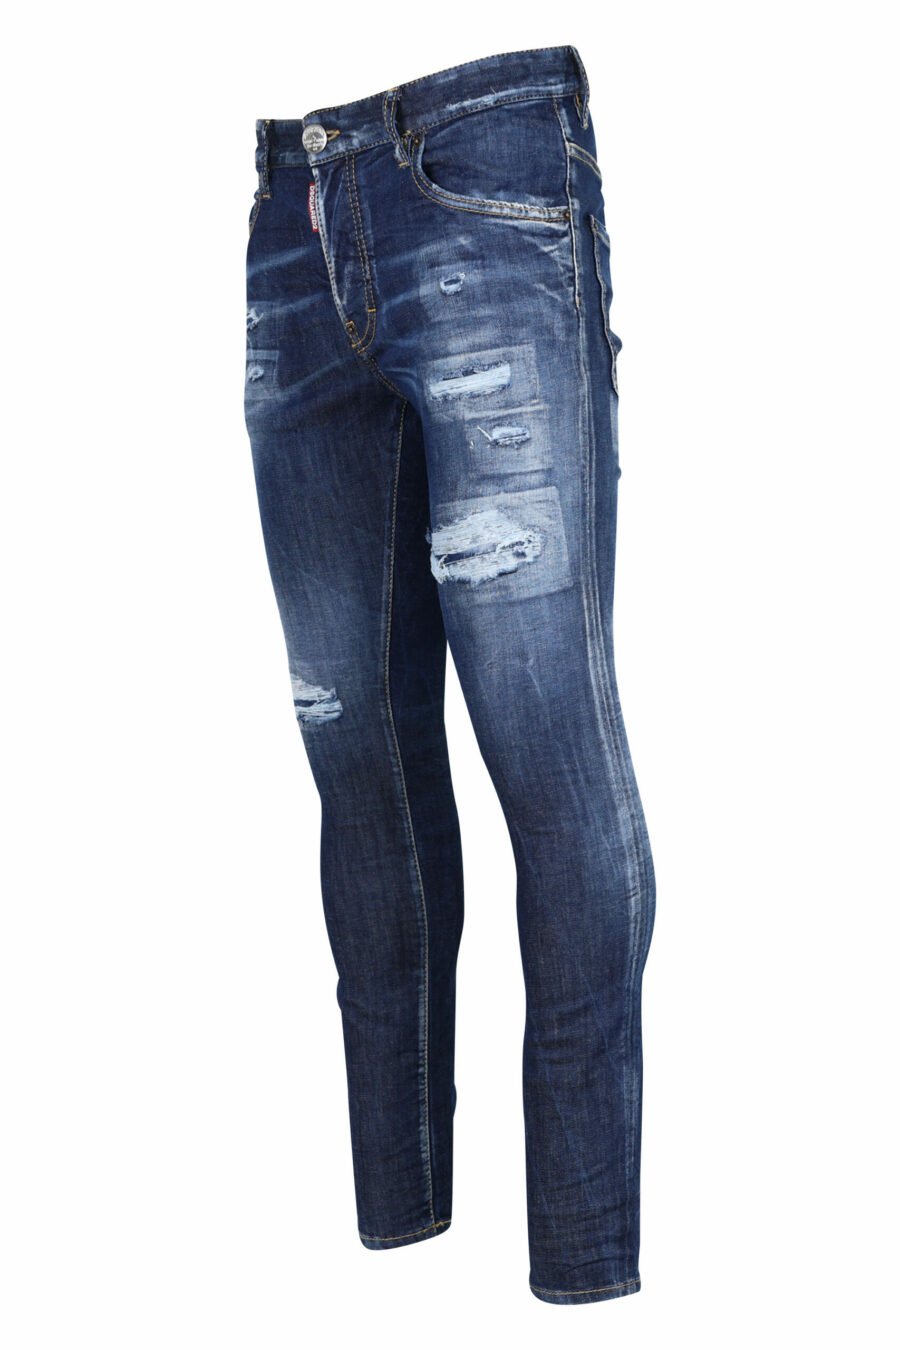 Calças de ganga "super twinky jean" azuis com rasgões e desgastadas - 8054148106201 1 scaled